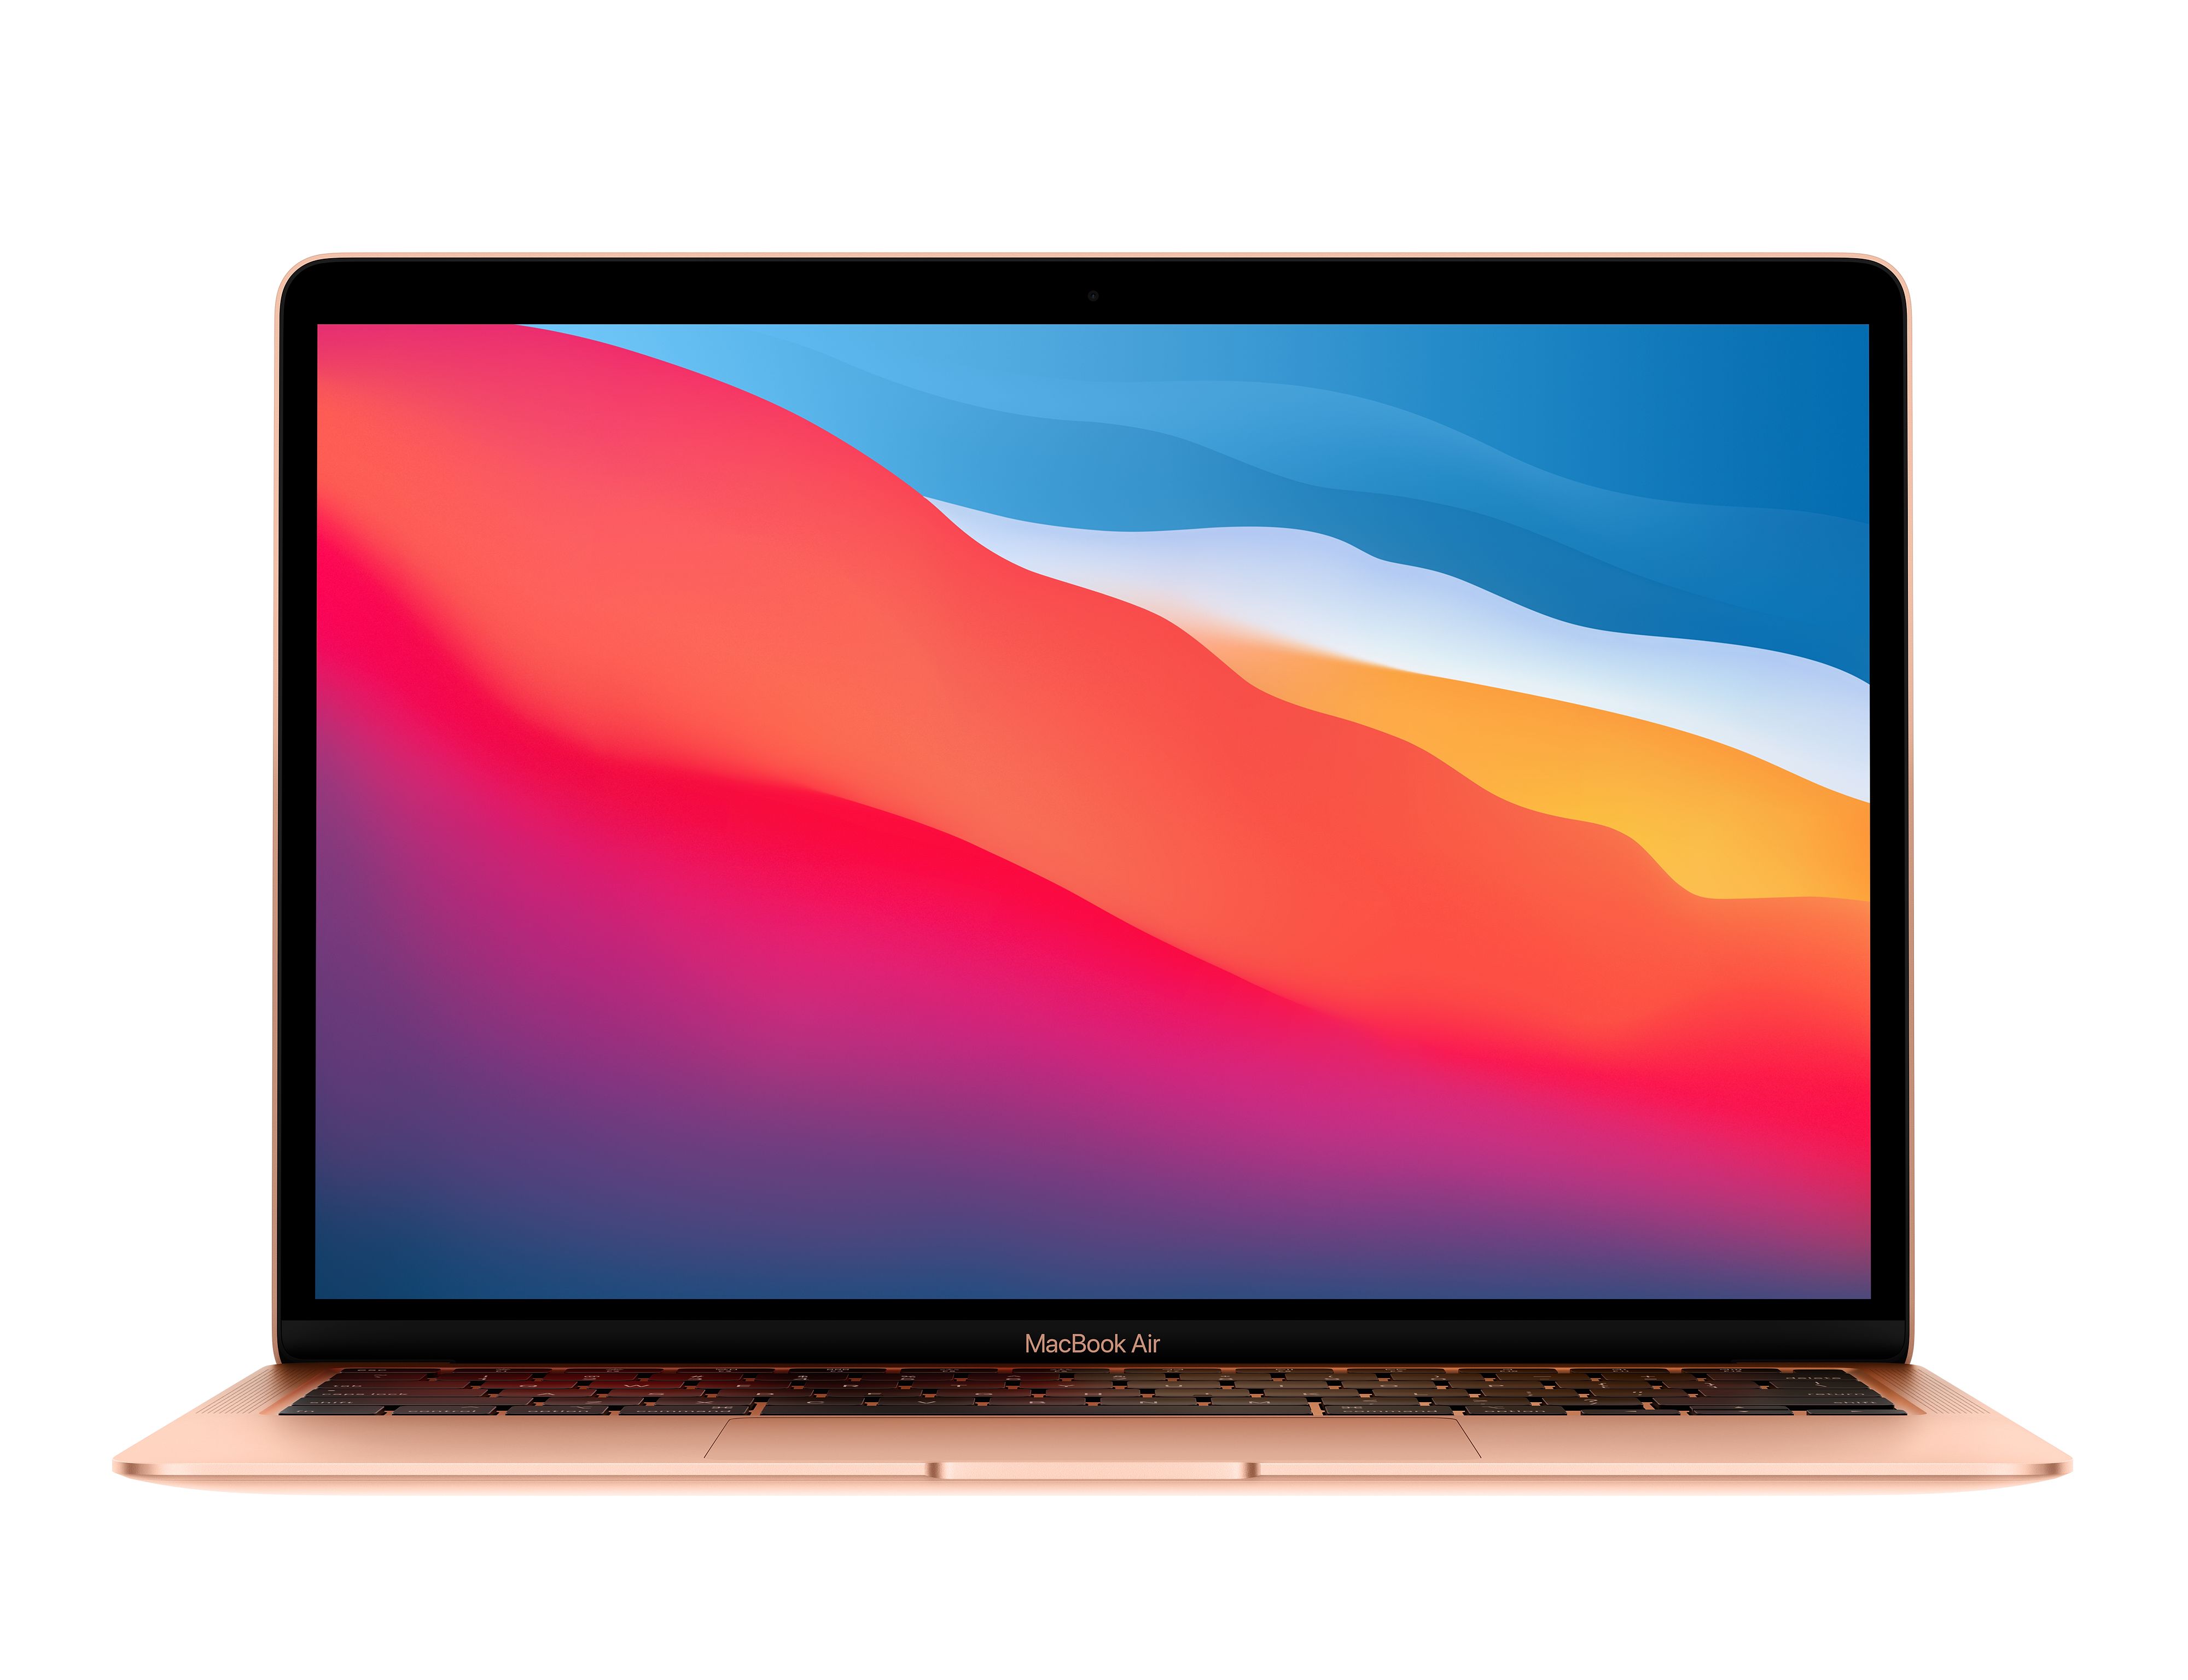 Apple MacBook Air (finales 2020) características, especificaciones y